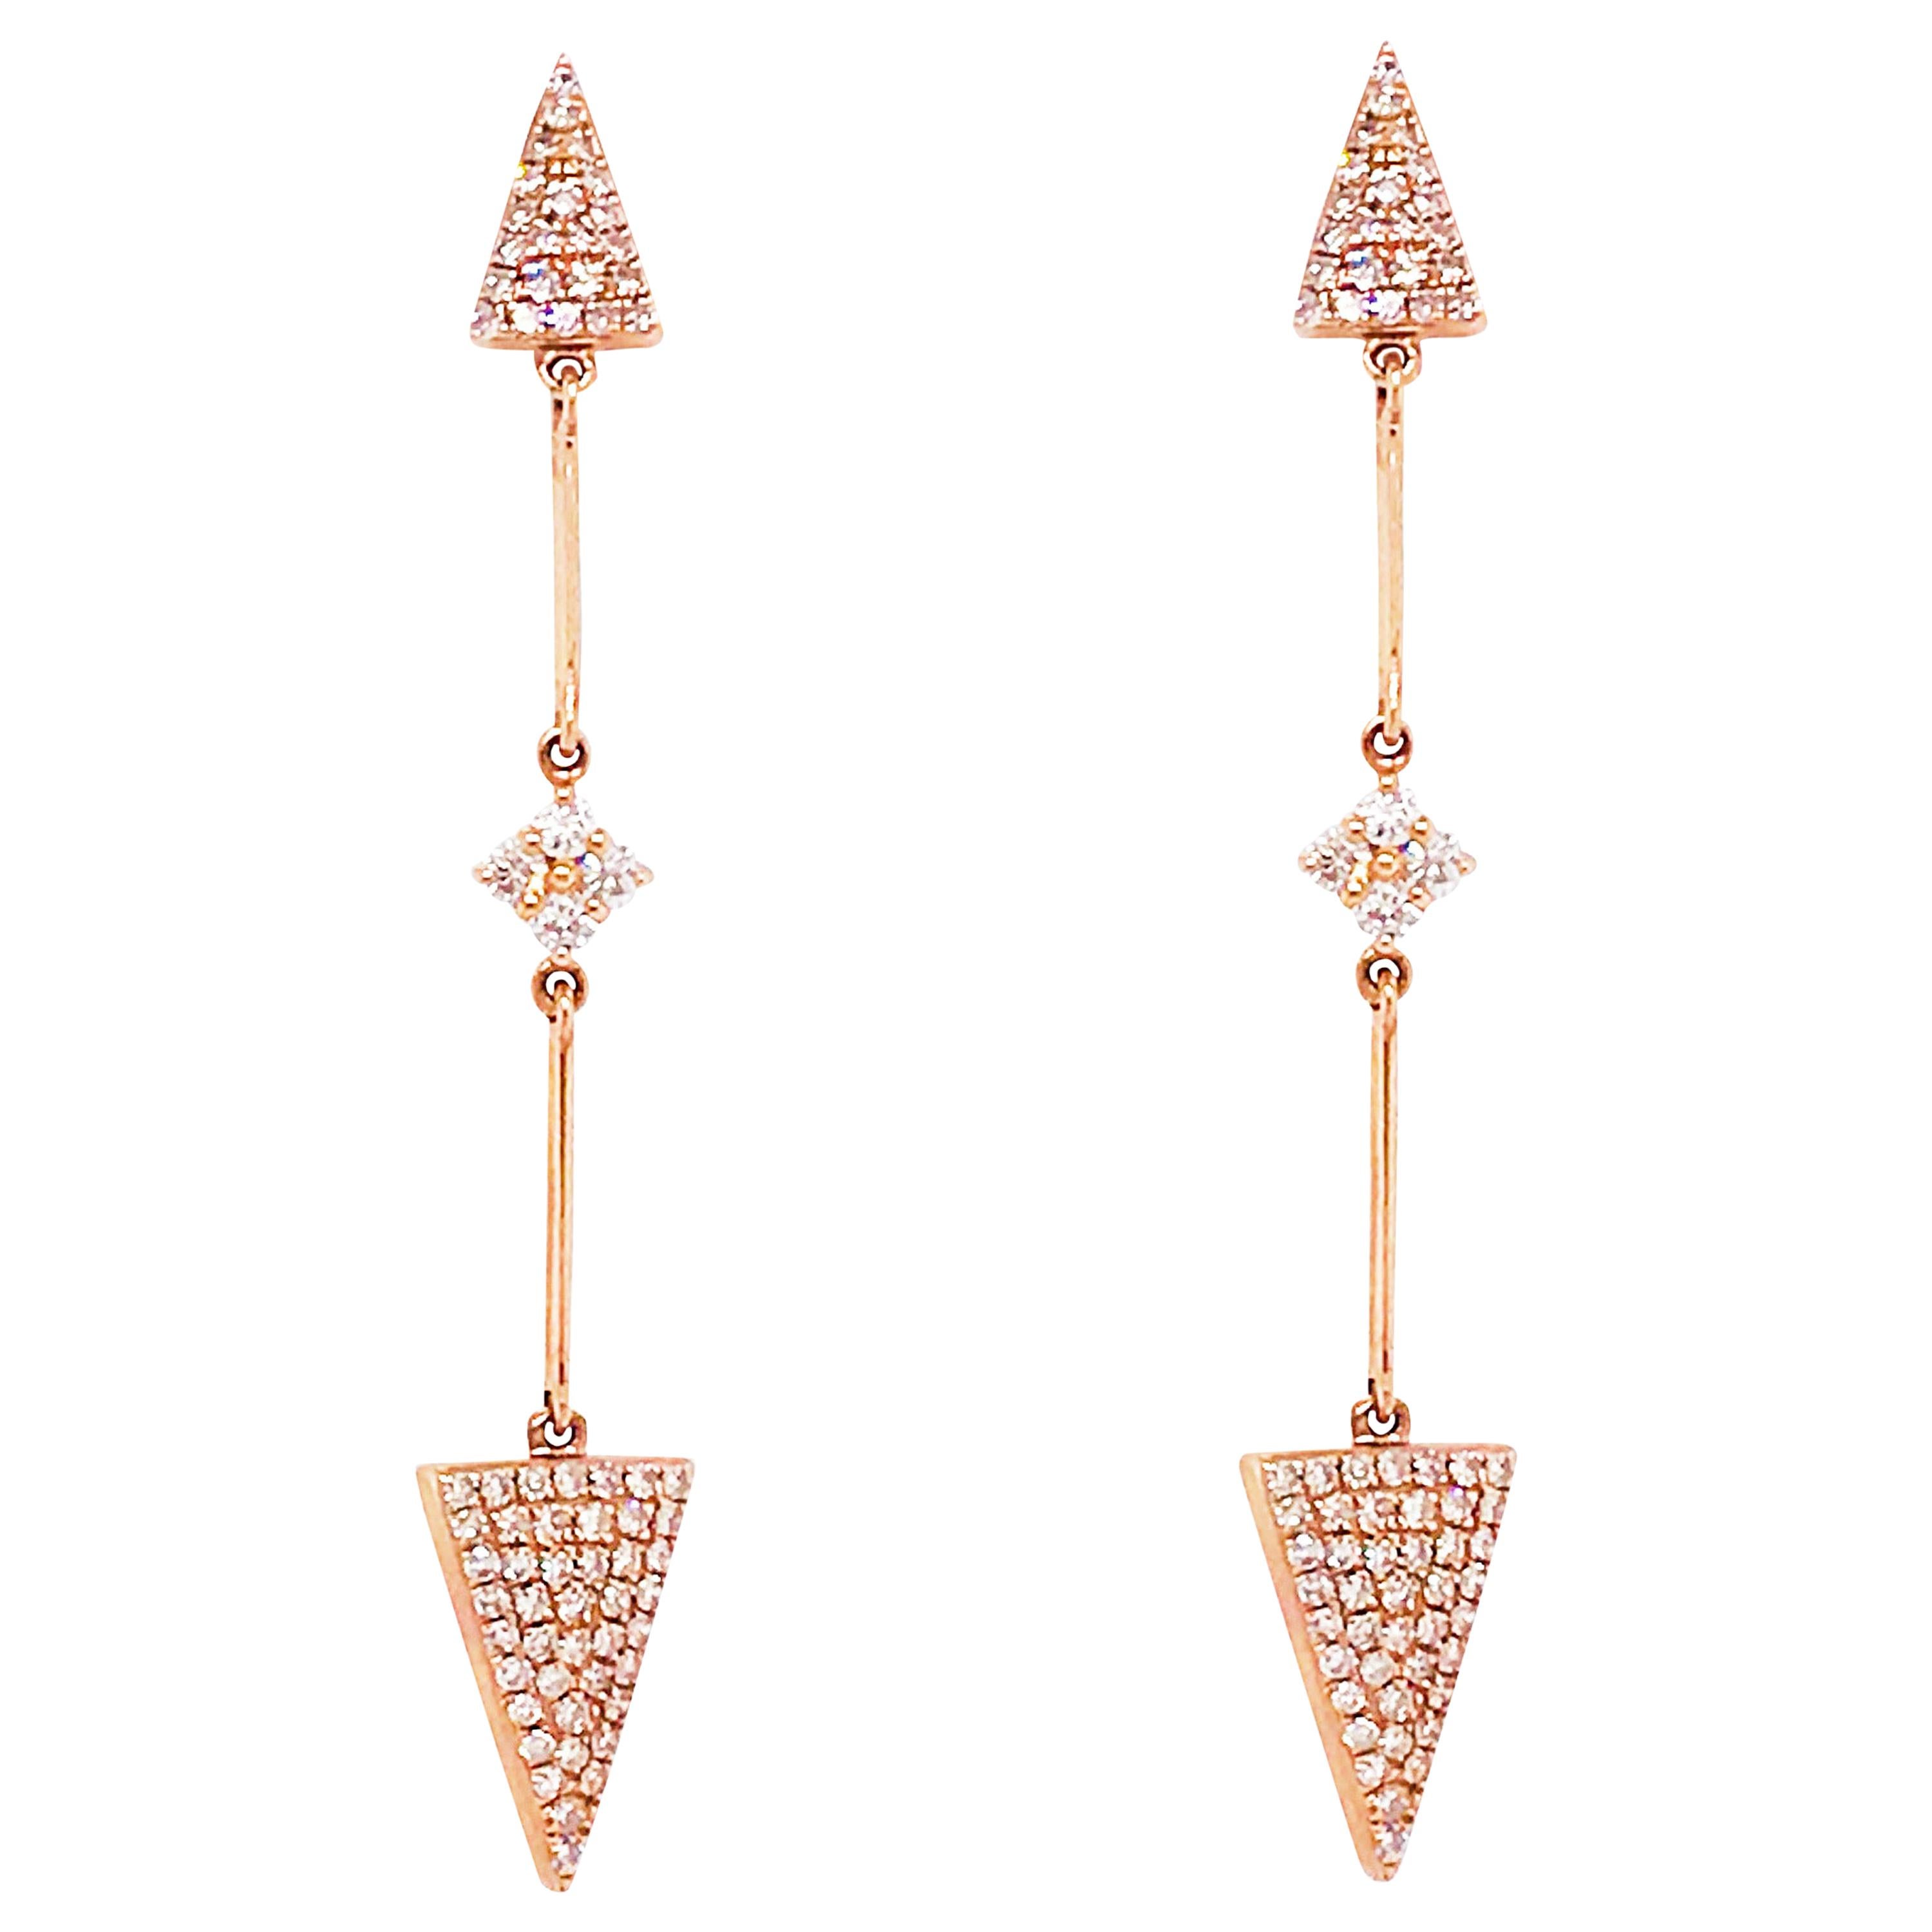 Diamond Arrow Earring Dangles in 14 Karat Gold Pave Diamond Point Drop Earrings